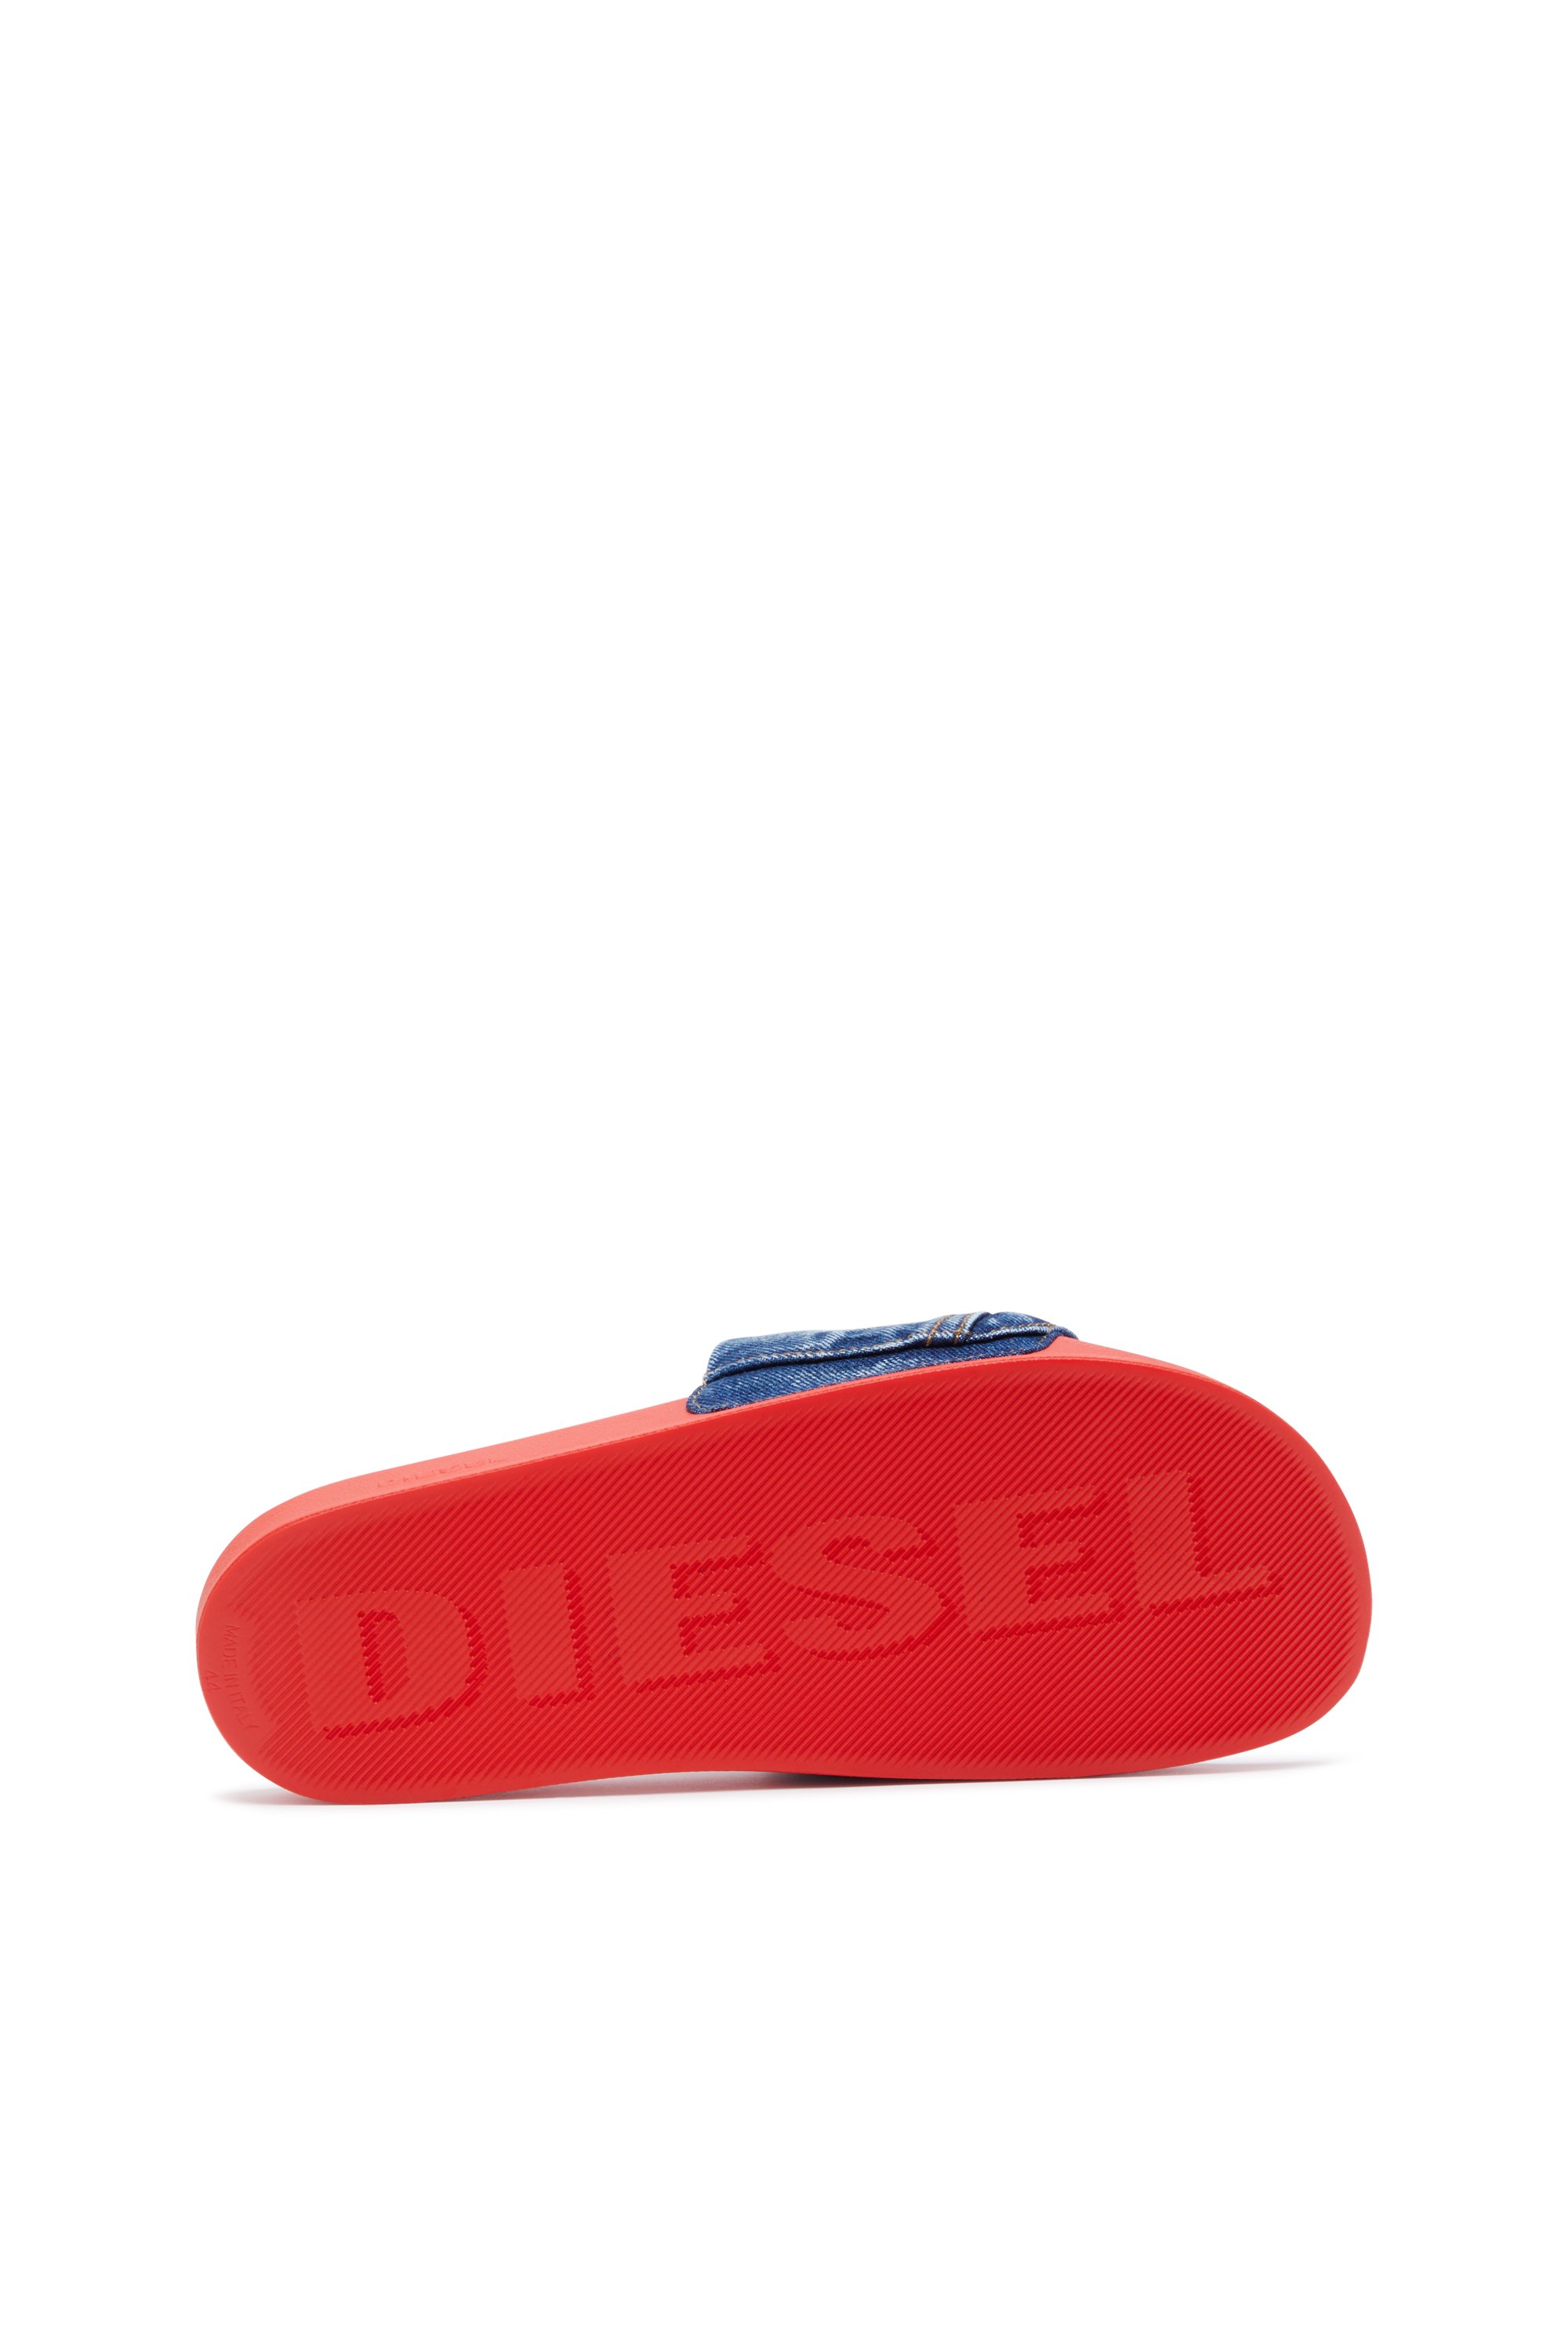 Diesel - SA-MAYEMI PK, Bleu/Rouge - Image 4